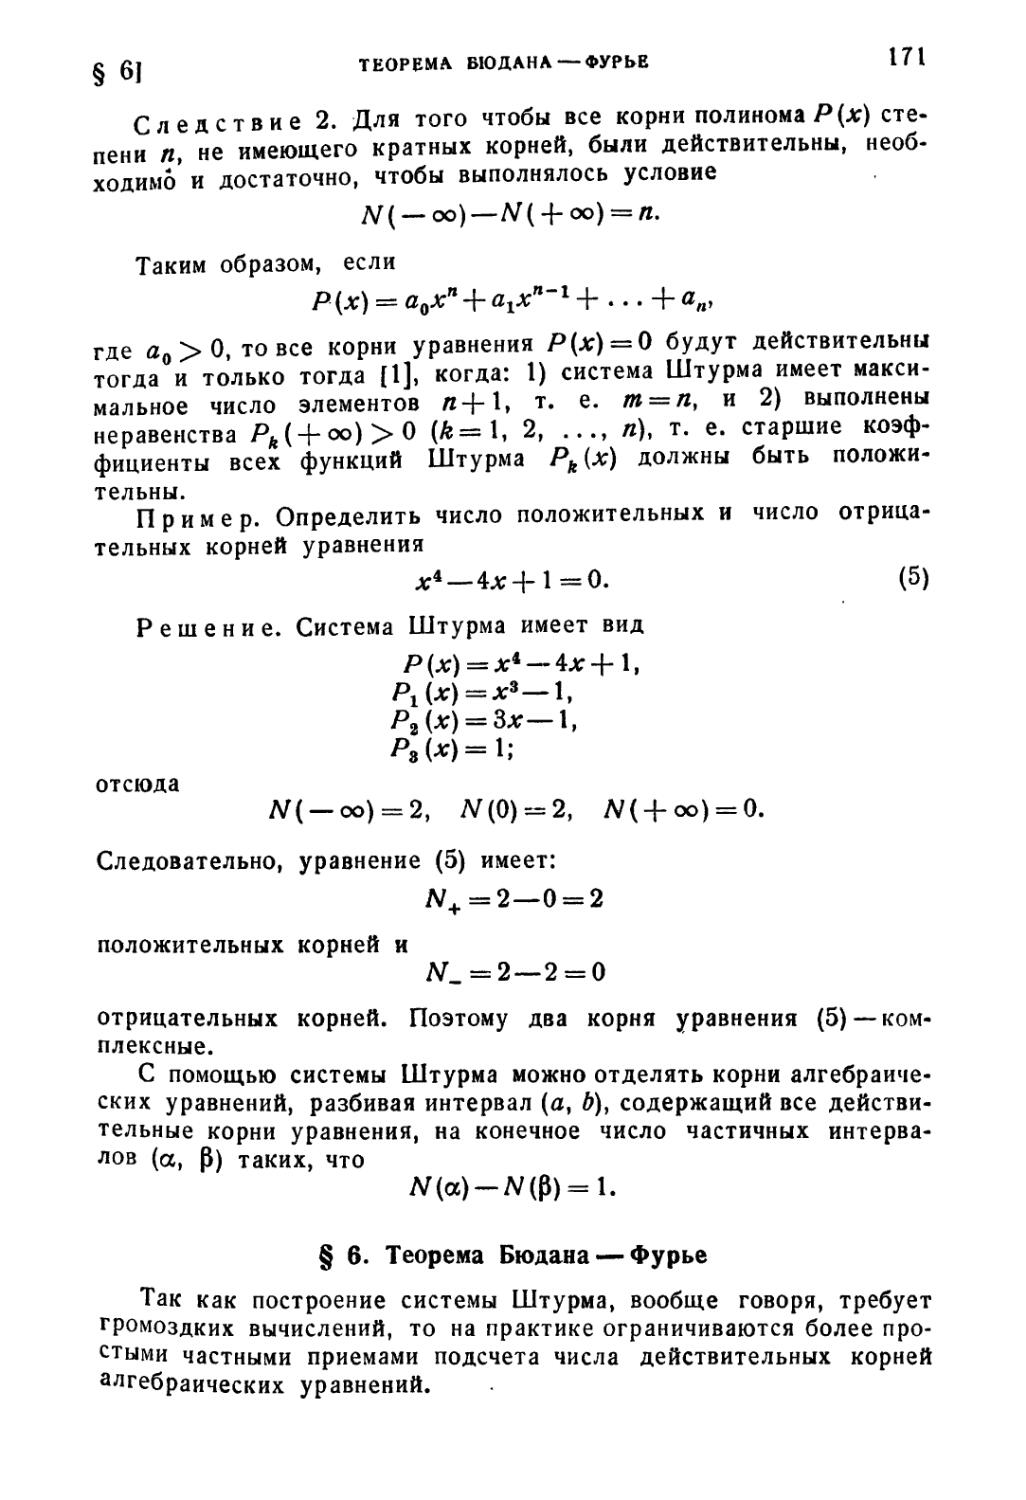 § 6. Теорема Бюдана-Фурье